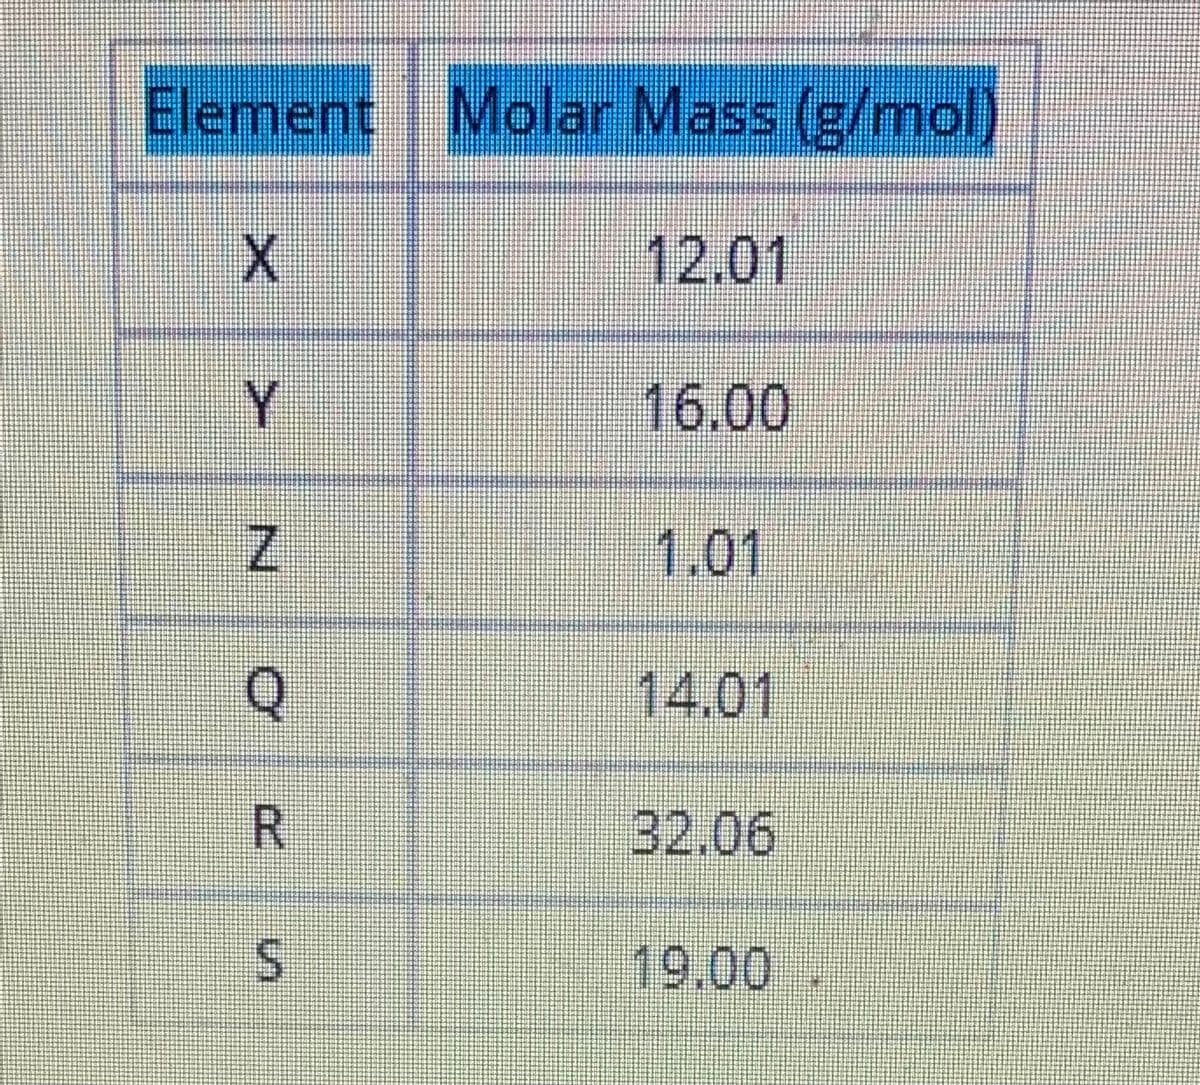 Element Molar Mass (g/mol)
X.
12.01
Y
16.00
1.01
14.01
32.06
19.00
N.
R.
